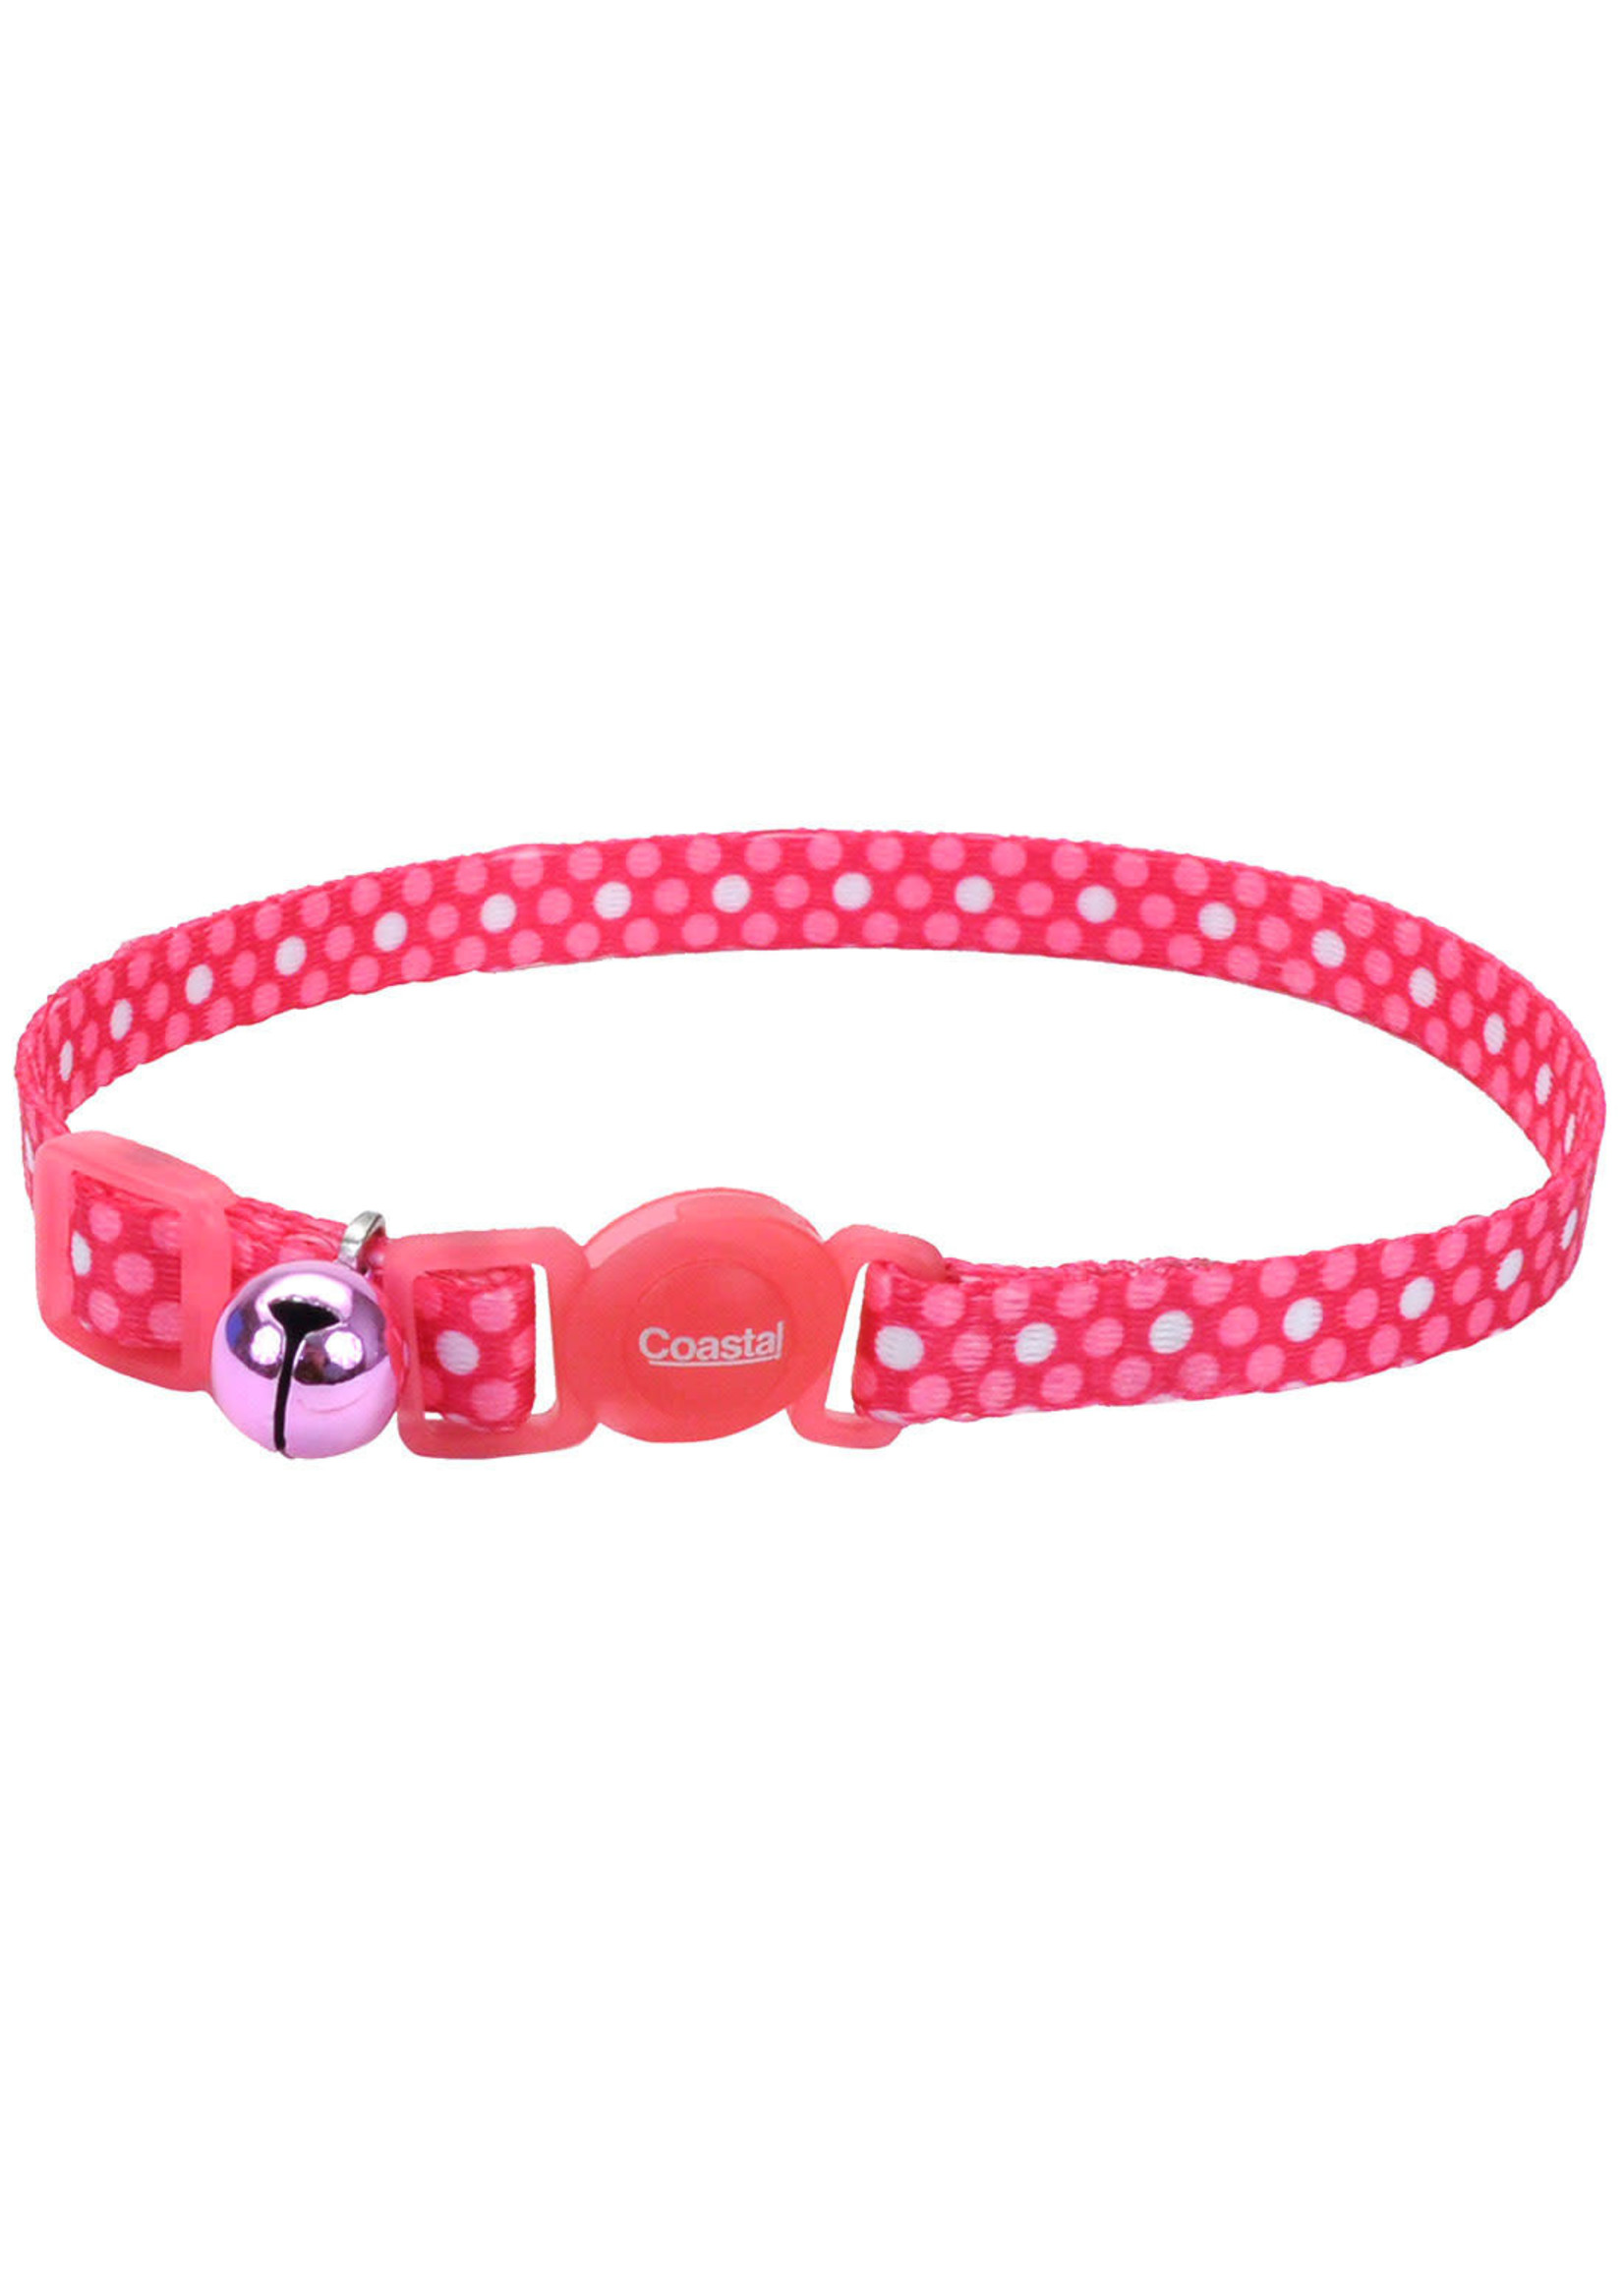 Coastal Safe Cat Fashion Breakaway Collar Pink Polka Dot 8"-12"